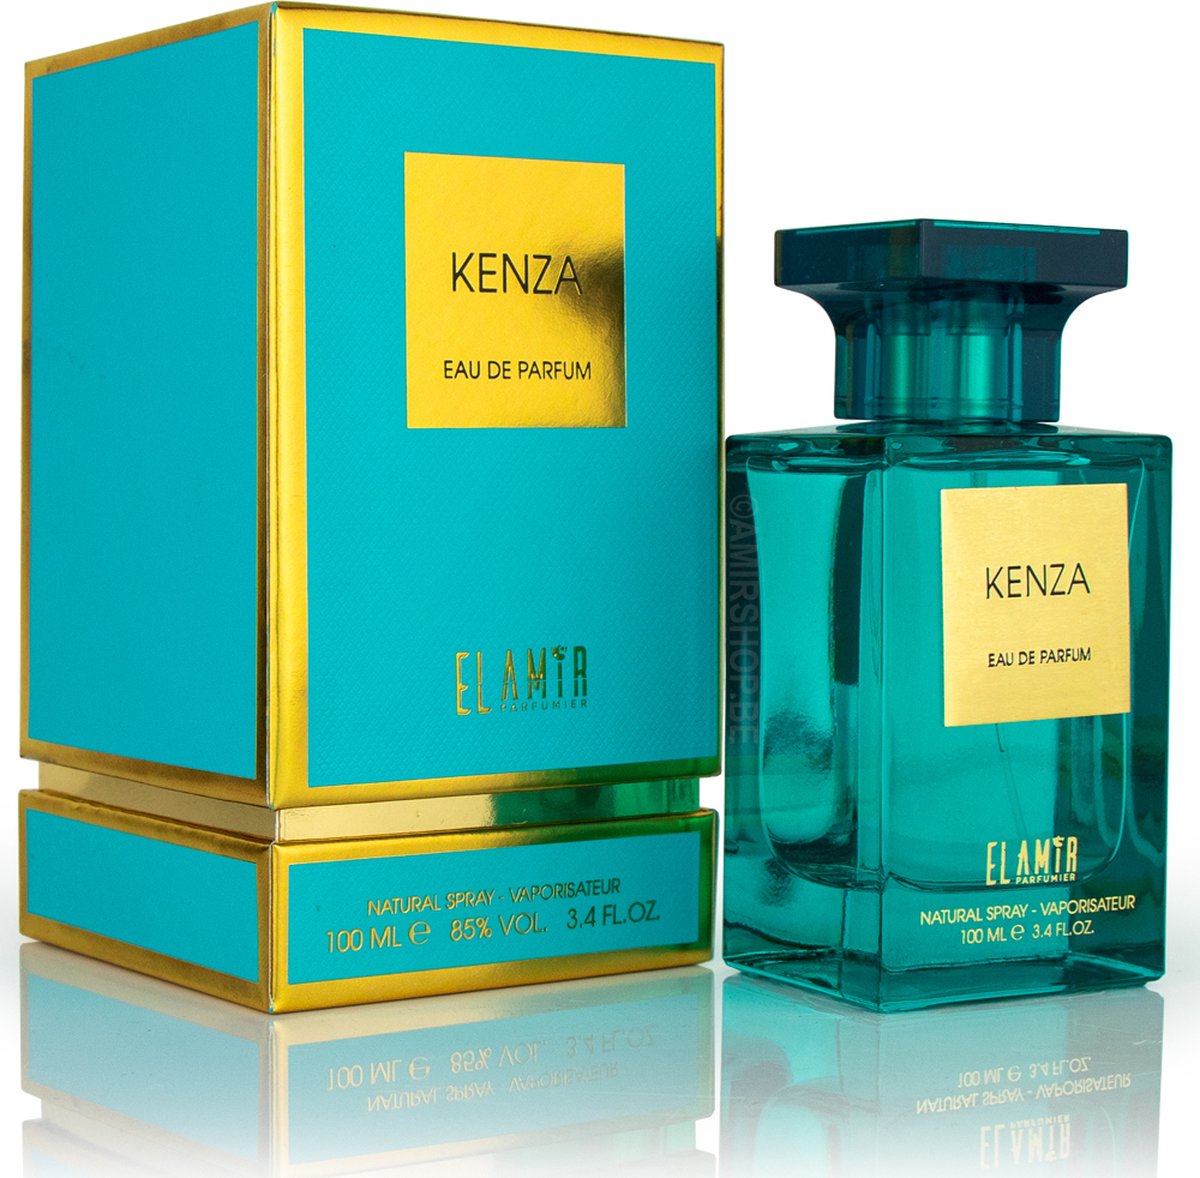 Eau de parfum el amir - Kenza - 100 ml - EL AMIR PARFUMIER - Parfum oriental pour femme